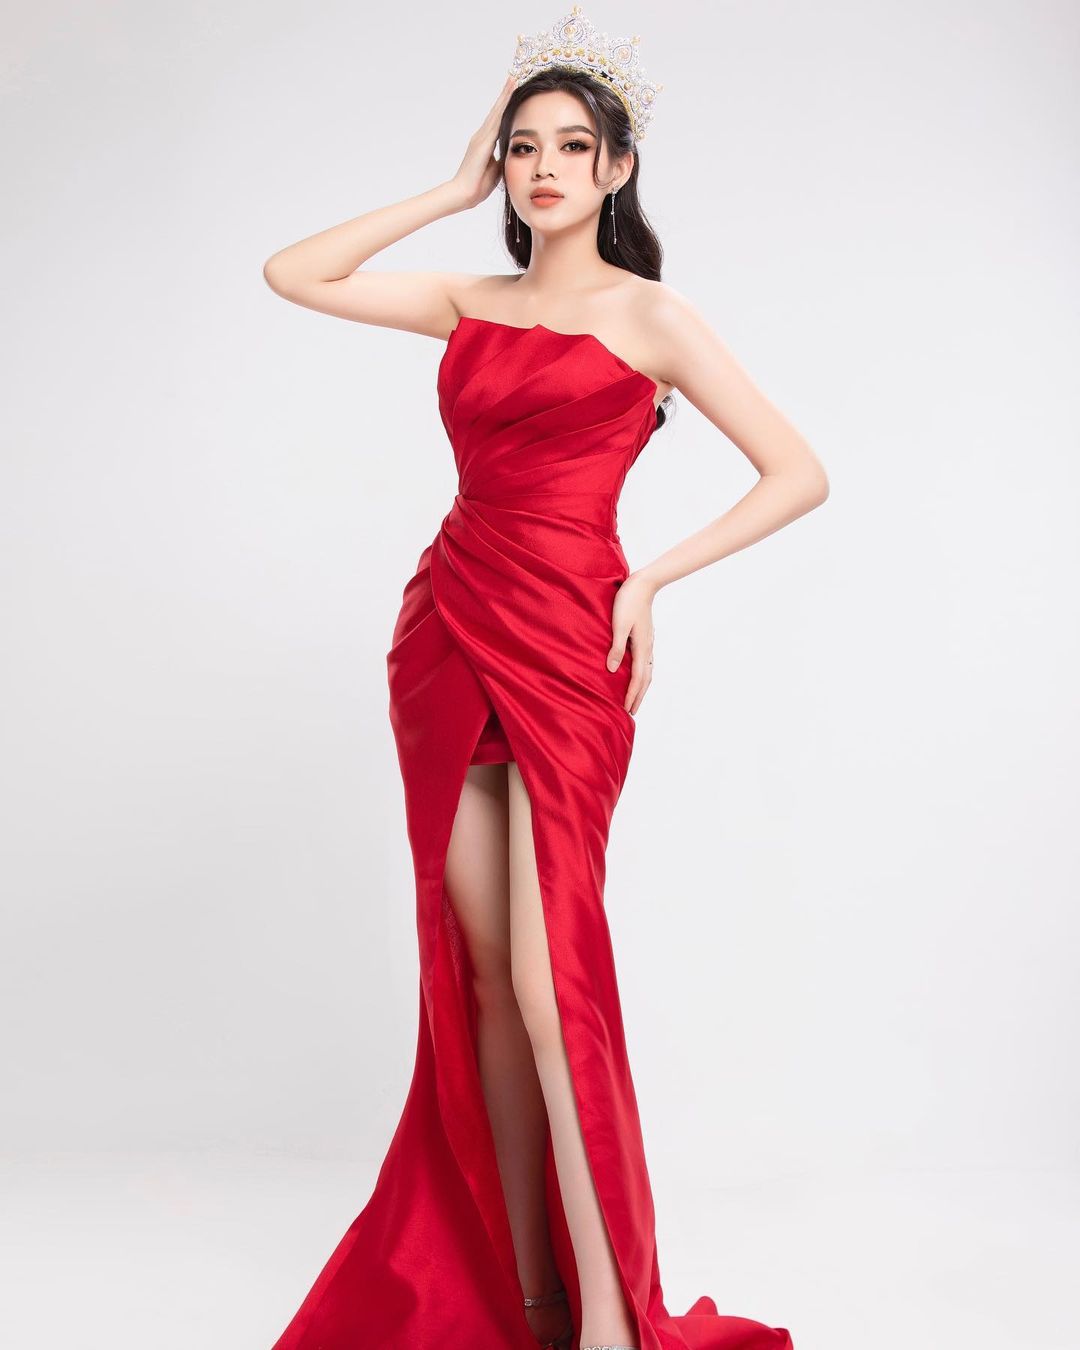 Hoa hậu Đỗ Thị Hà đang tích cực chuẩn bị để tham gia Miss World.